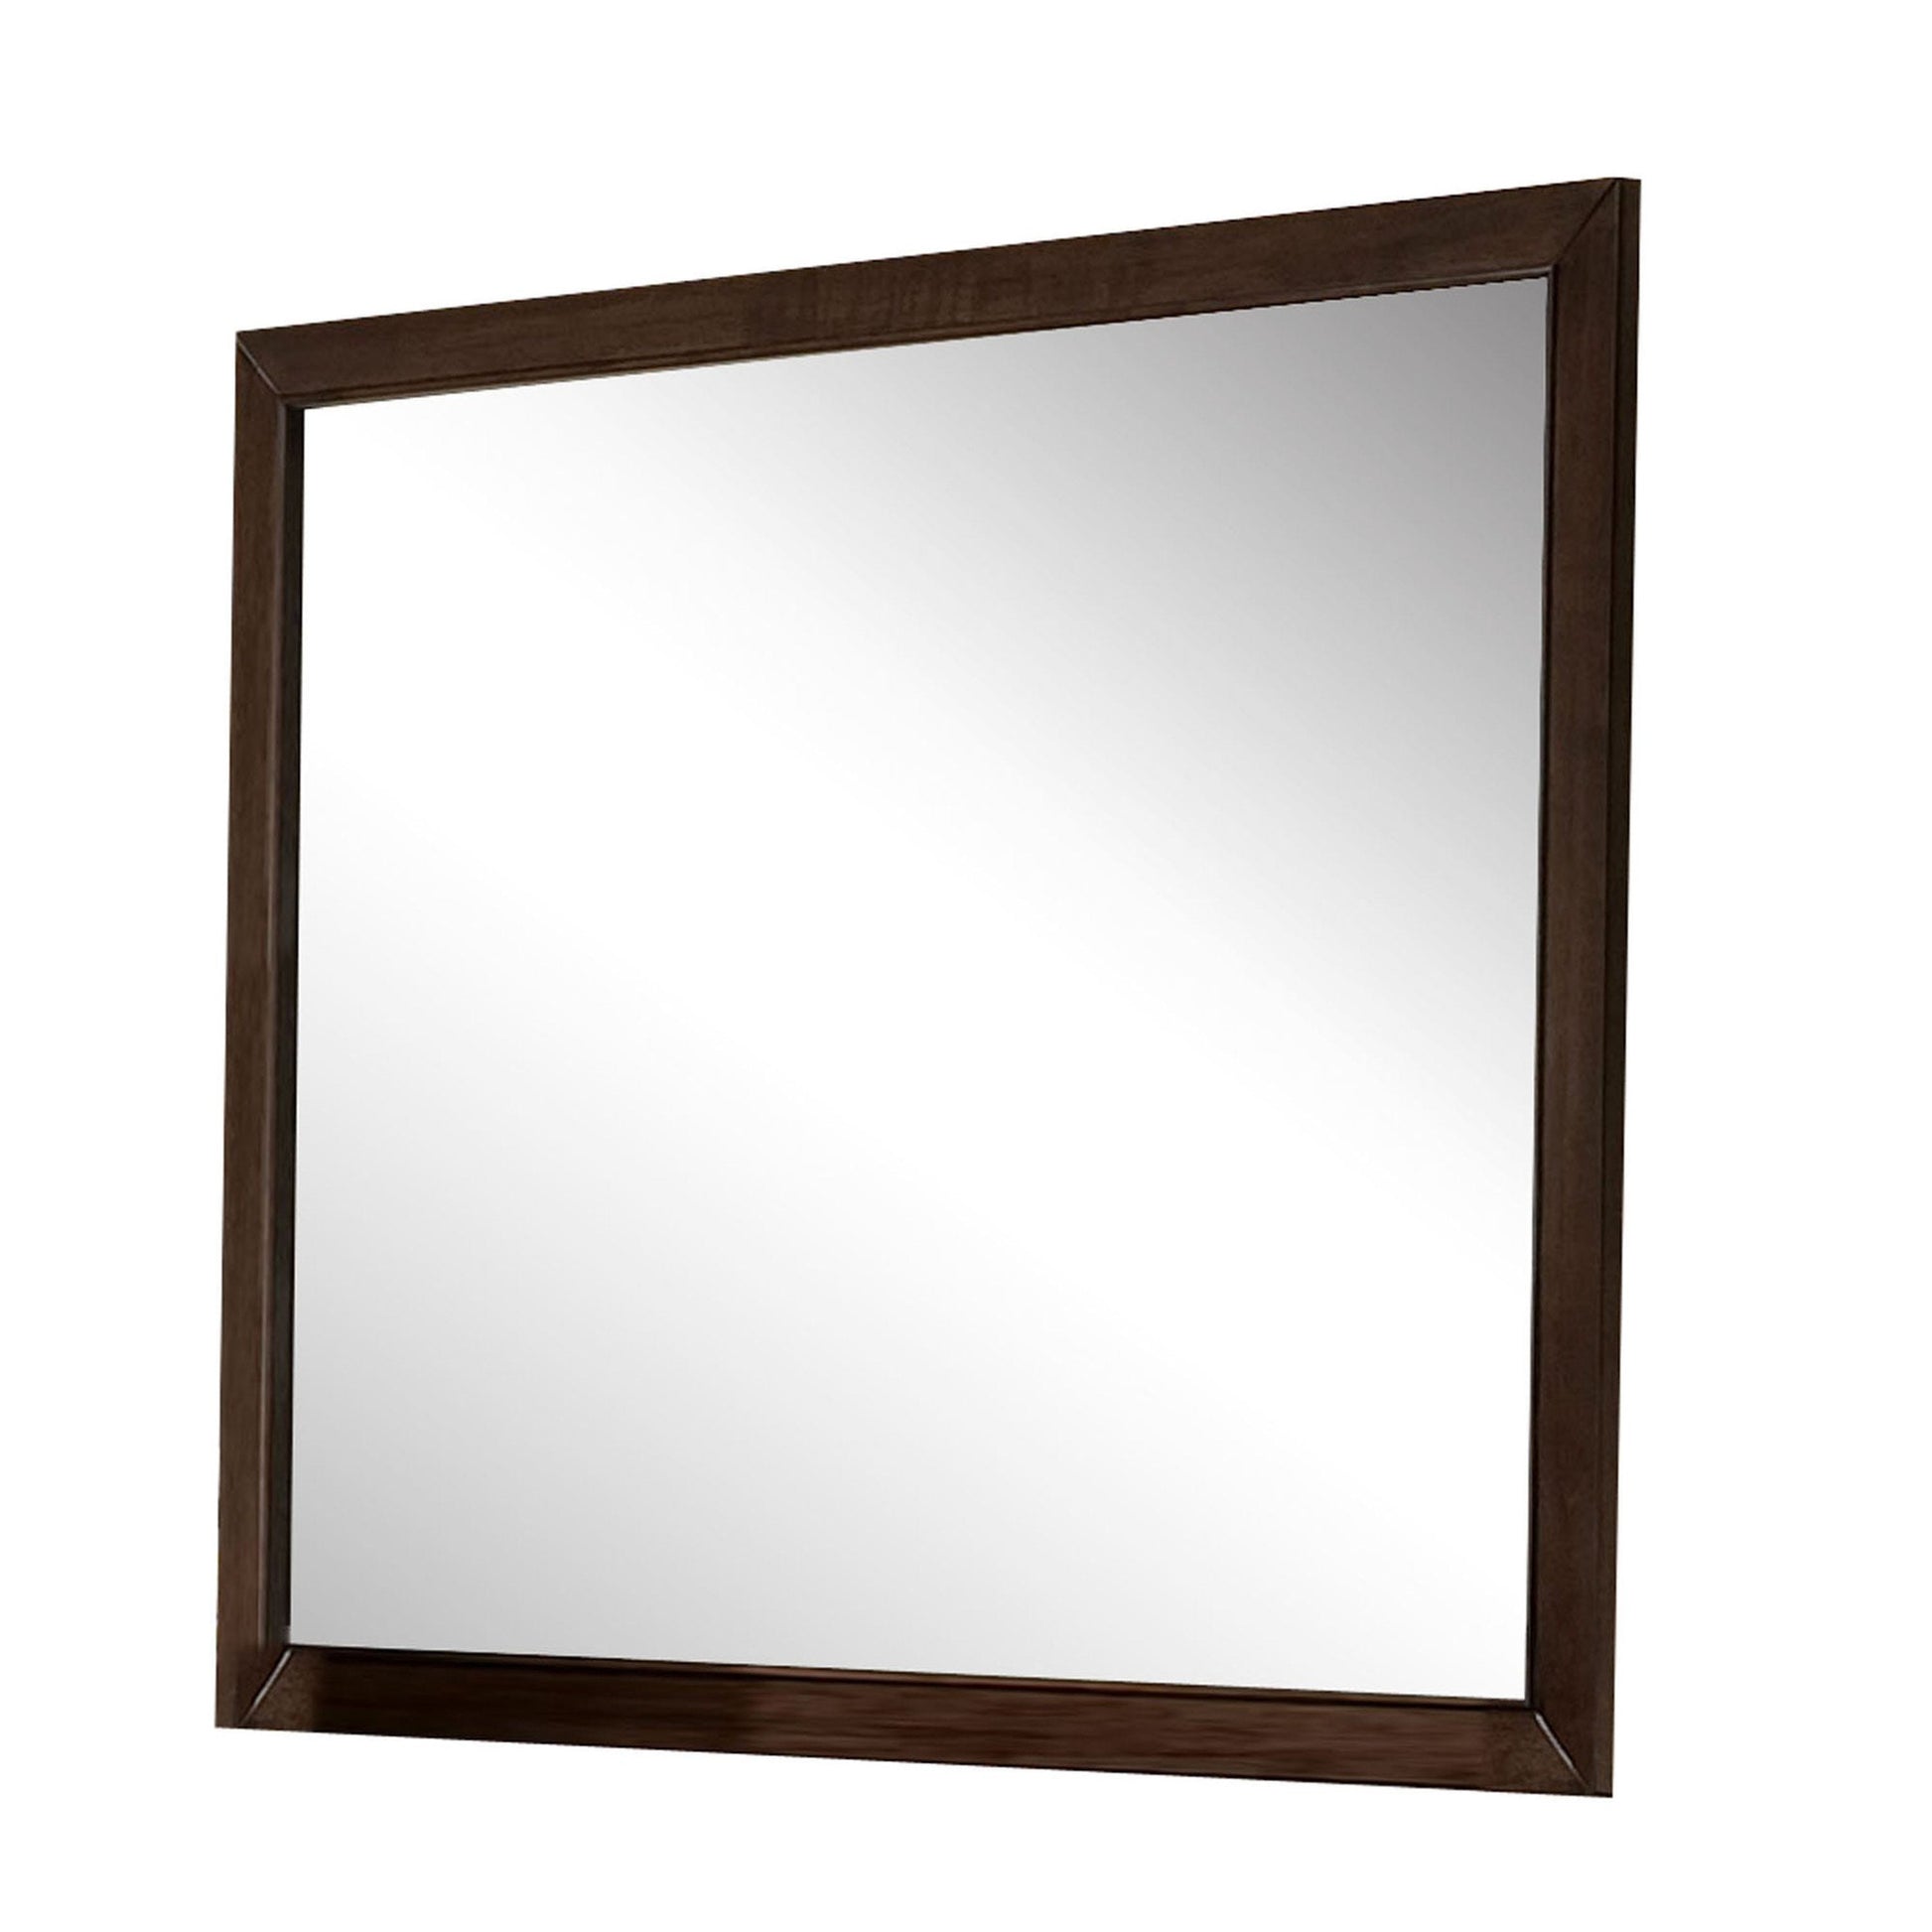 Benzara 38" Espresso Brown Rectangular Wooden Frame Mirror